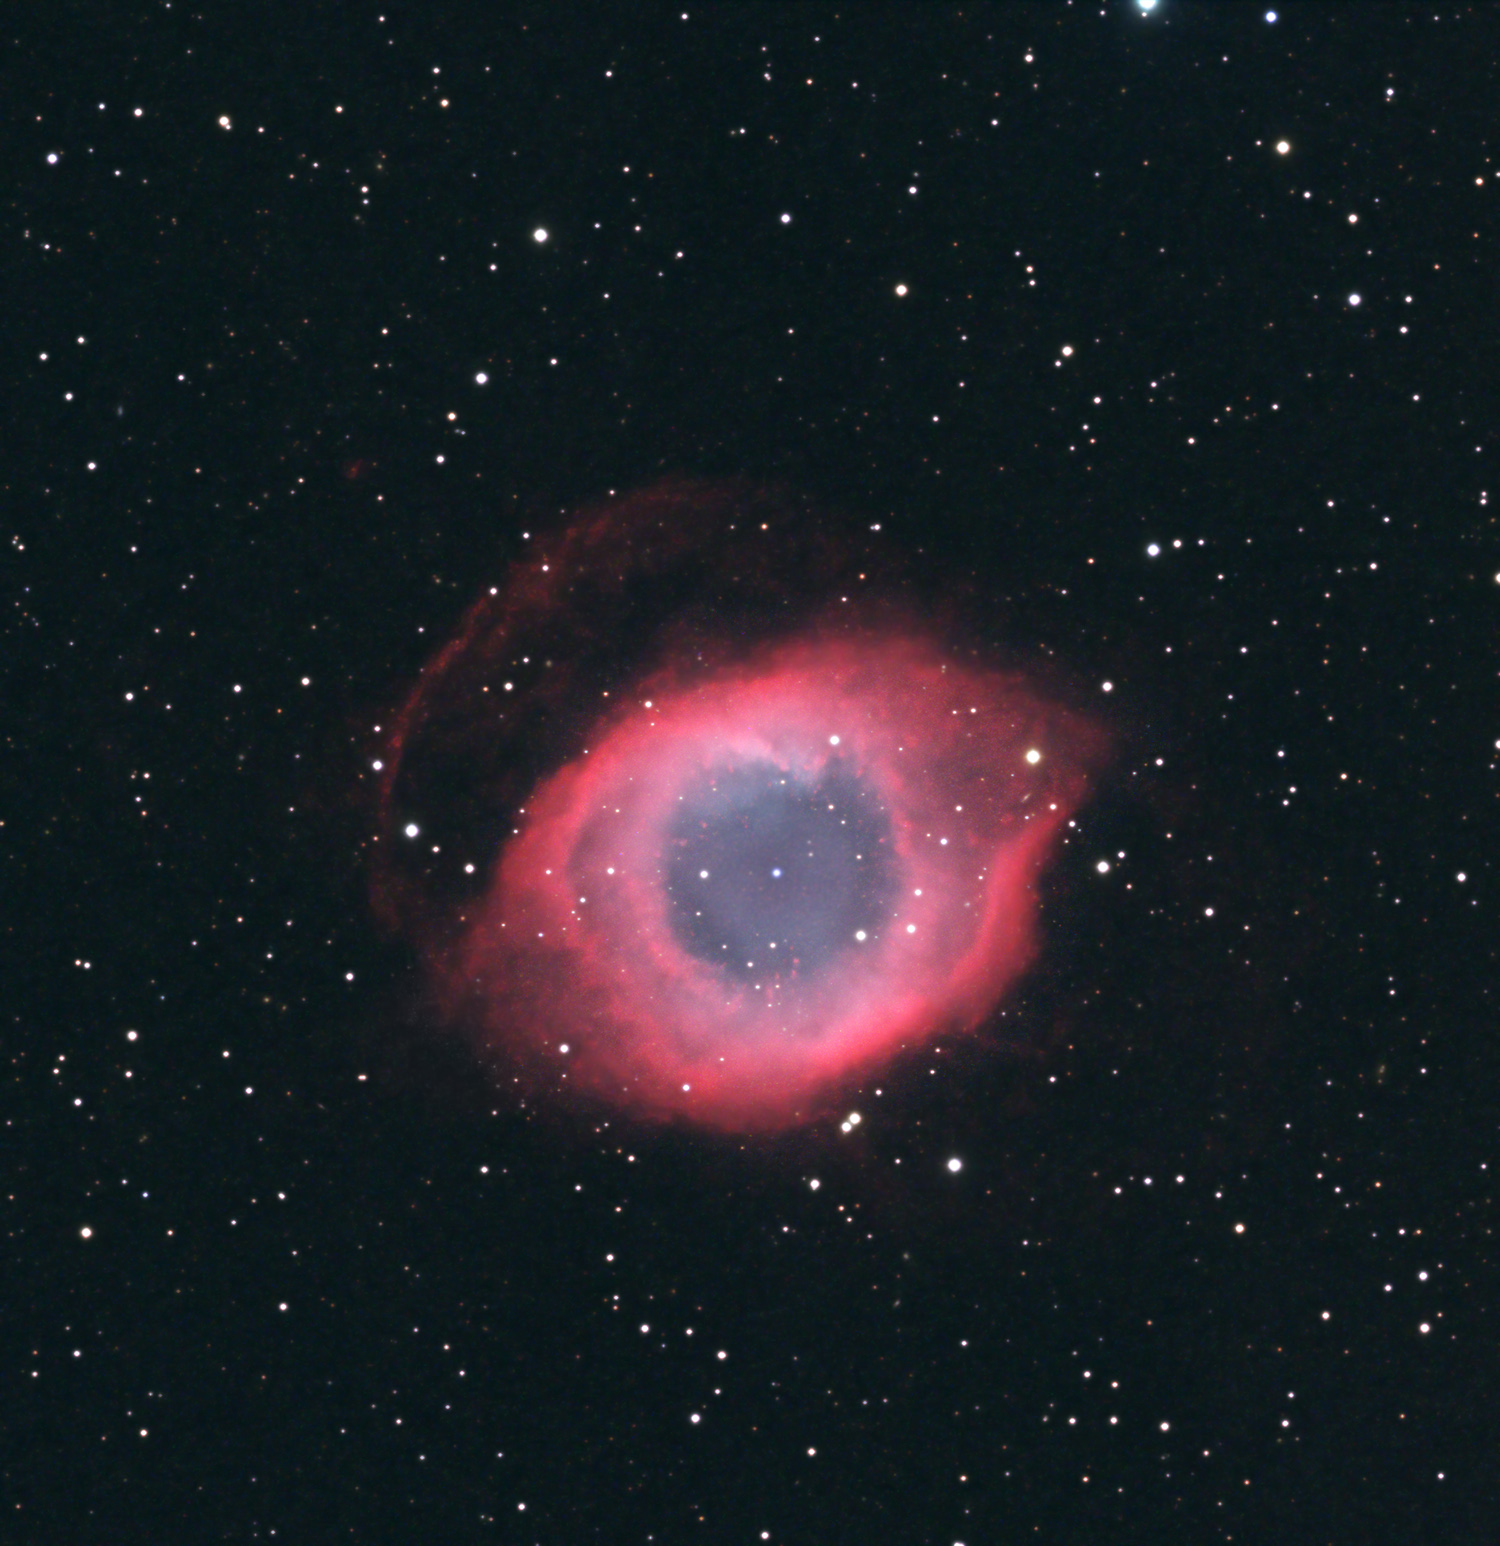 Helixnebel NGC 7293